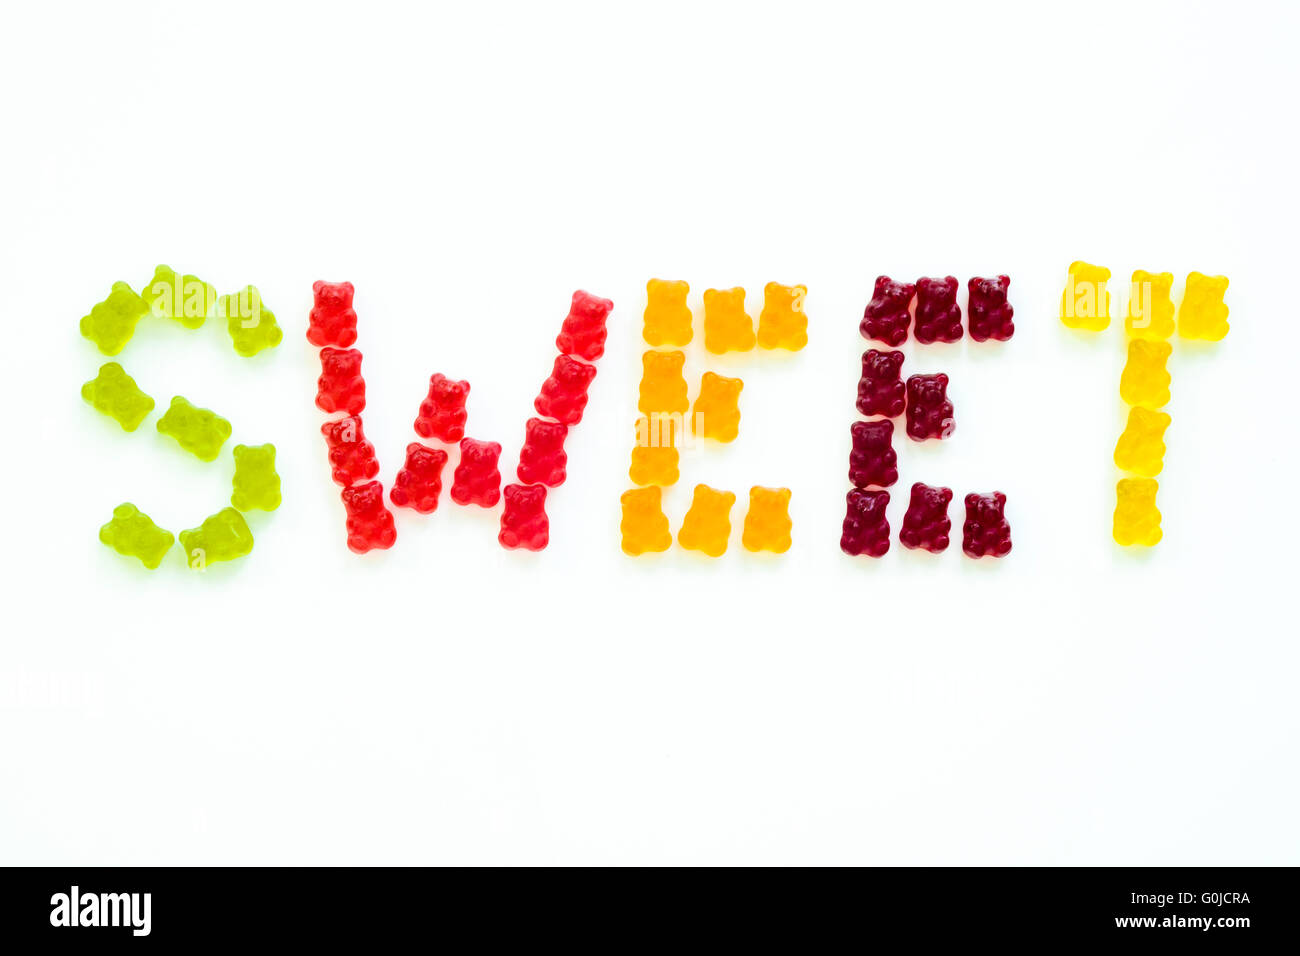 Groupe d'ours gommeux formant le mot 'sweet' en plusieurs couleurs avec fond isolé Banque D'Images